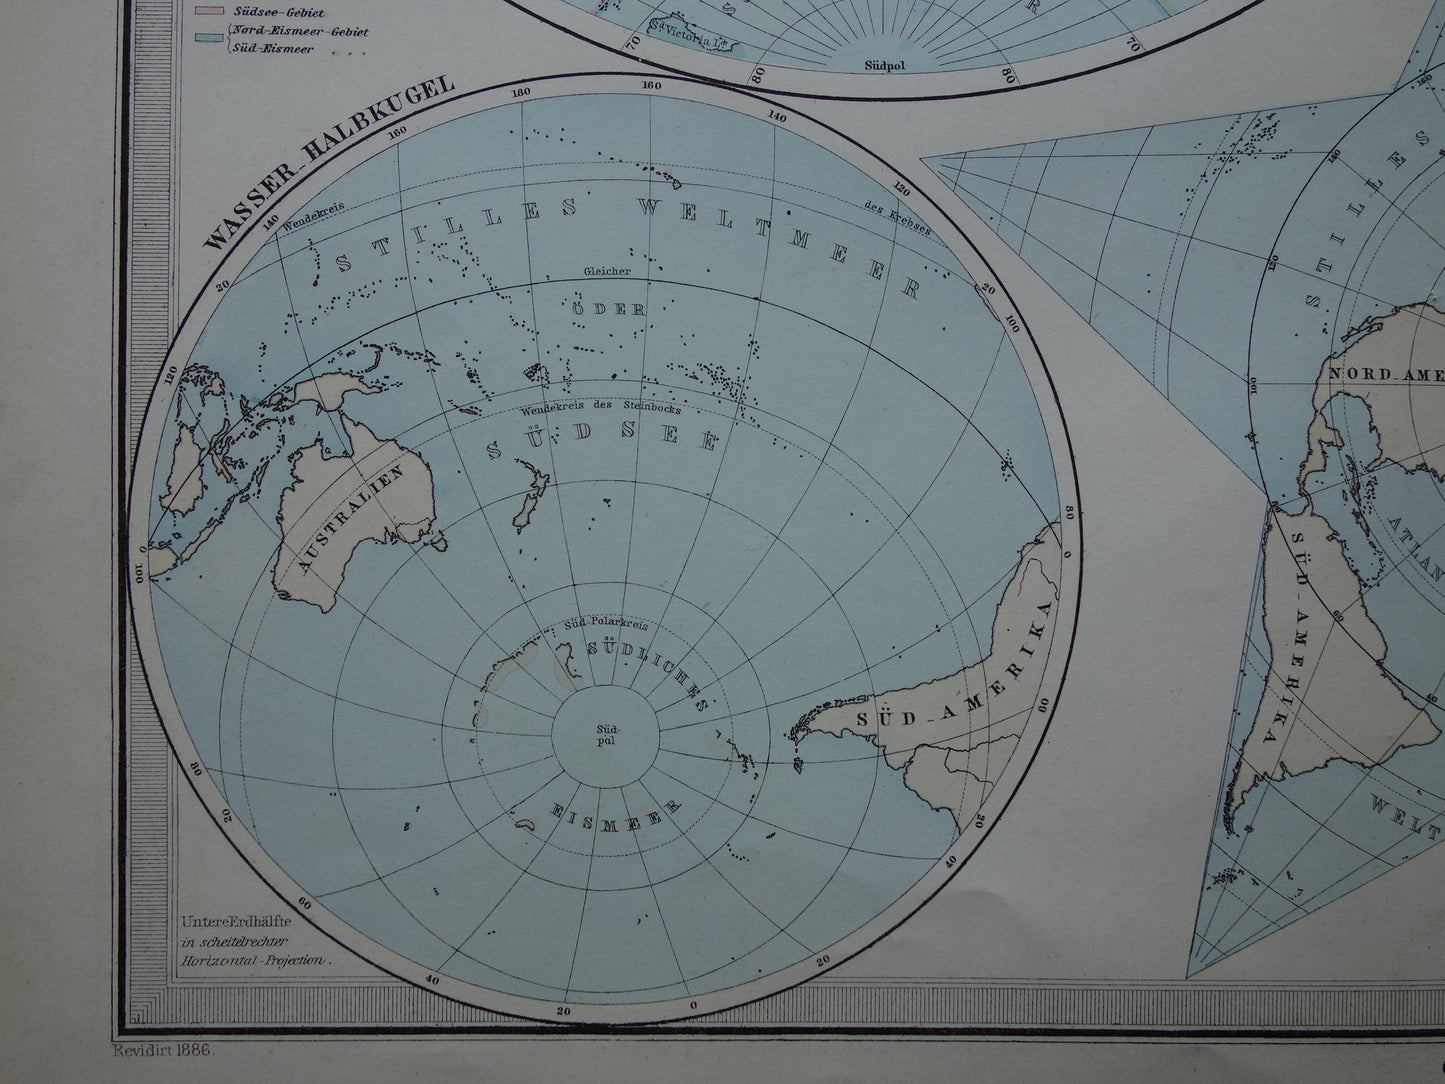 Antieke WERELDKAART grote oude kaart van de Wereld uit 1886 met dubbele hemisfeer originele vintage landkaart oceanen grootste landmassa met datum